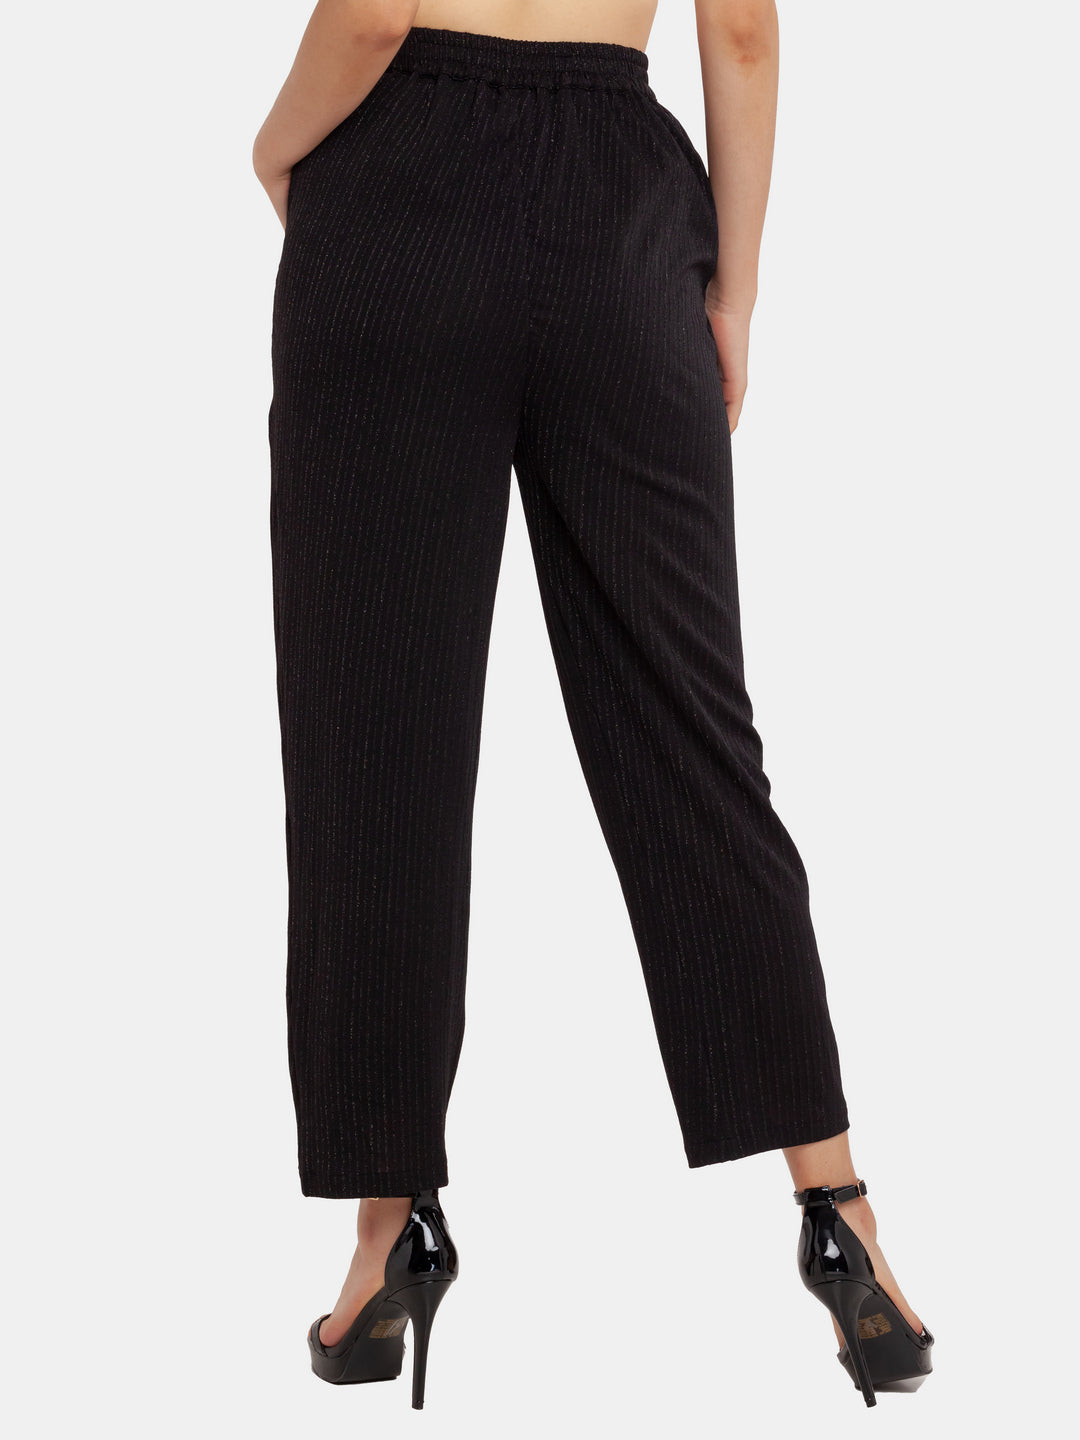 QWANG Women High Waist Casual Wide Leg Long Palazzo Pants Trousers Regular  Size - Walmart.com